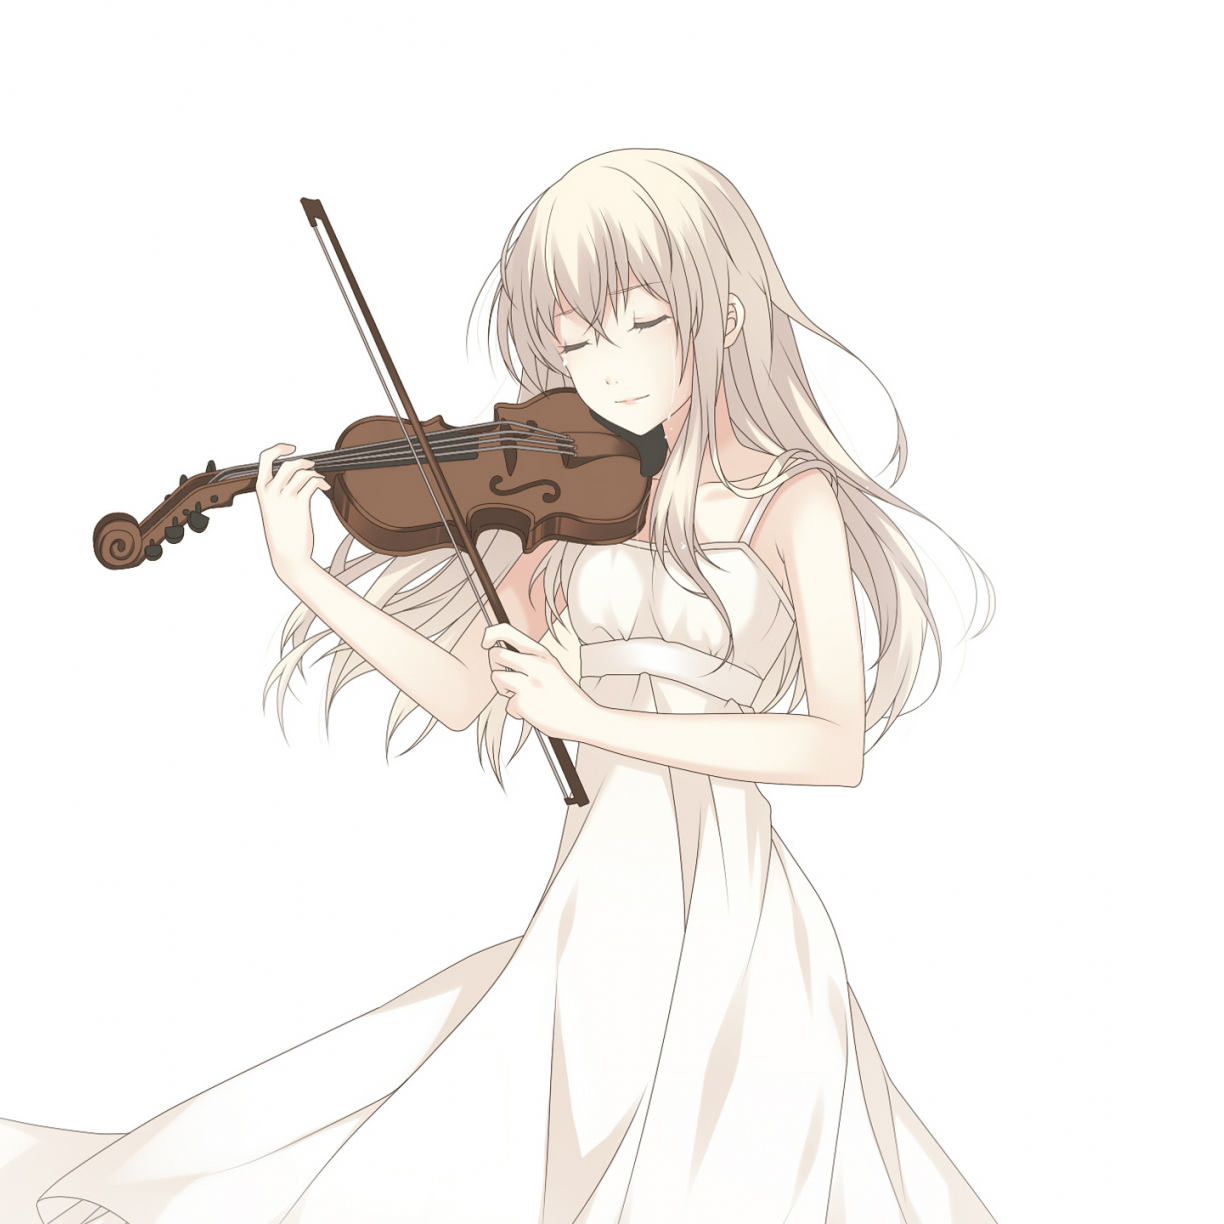 Shigatsu wa Kimi no Uso Kaori Miyazono With Violin 2, Violin Girl